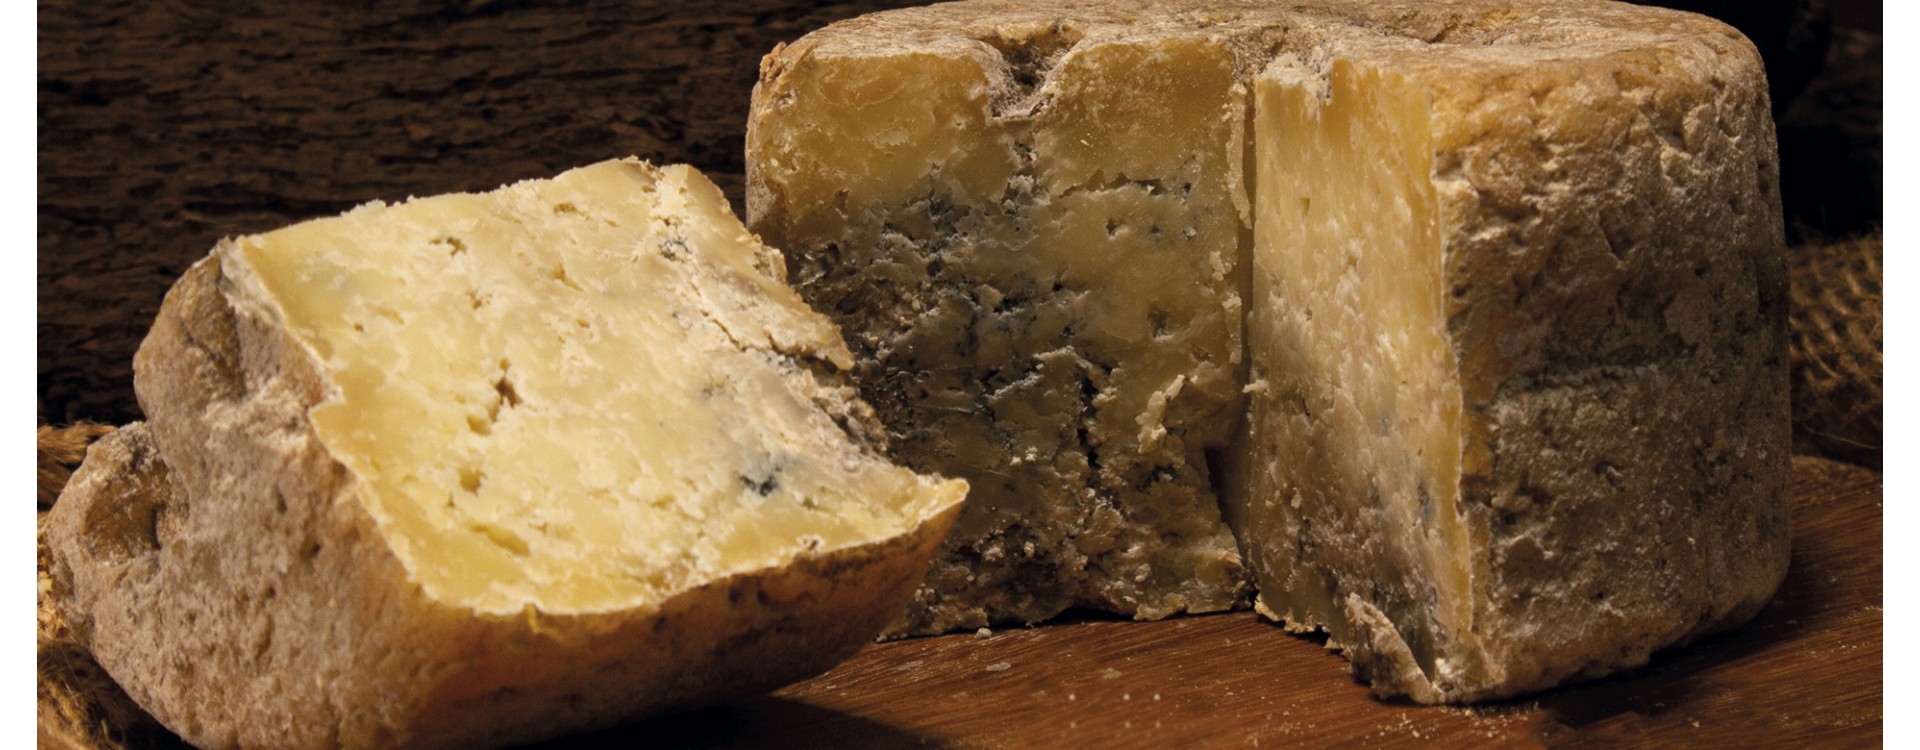 Gamonéu del Valle Toriello: el queso artesanal de los 5 sentidos